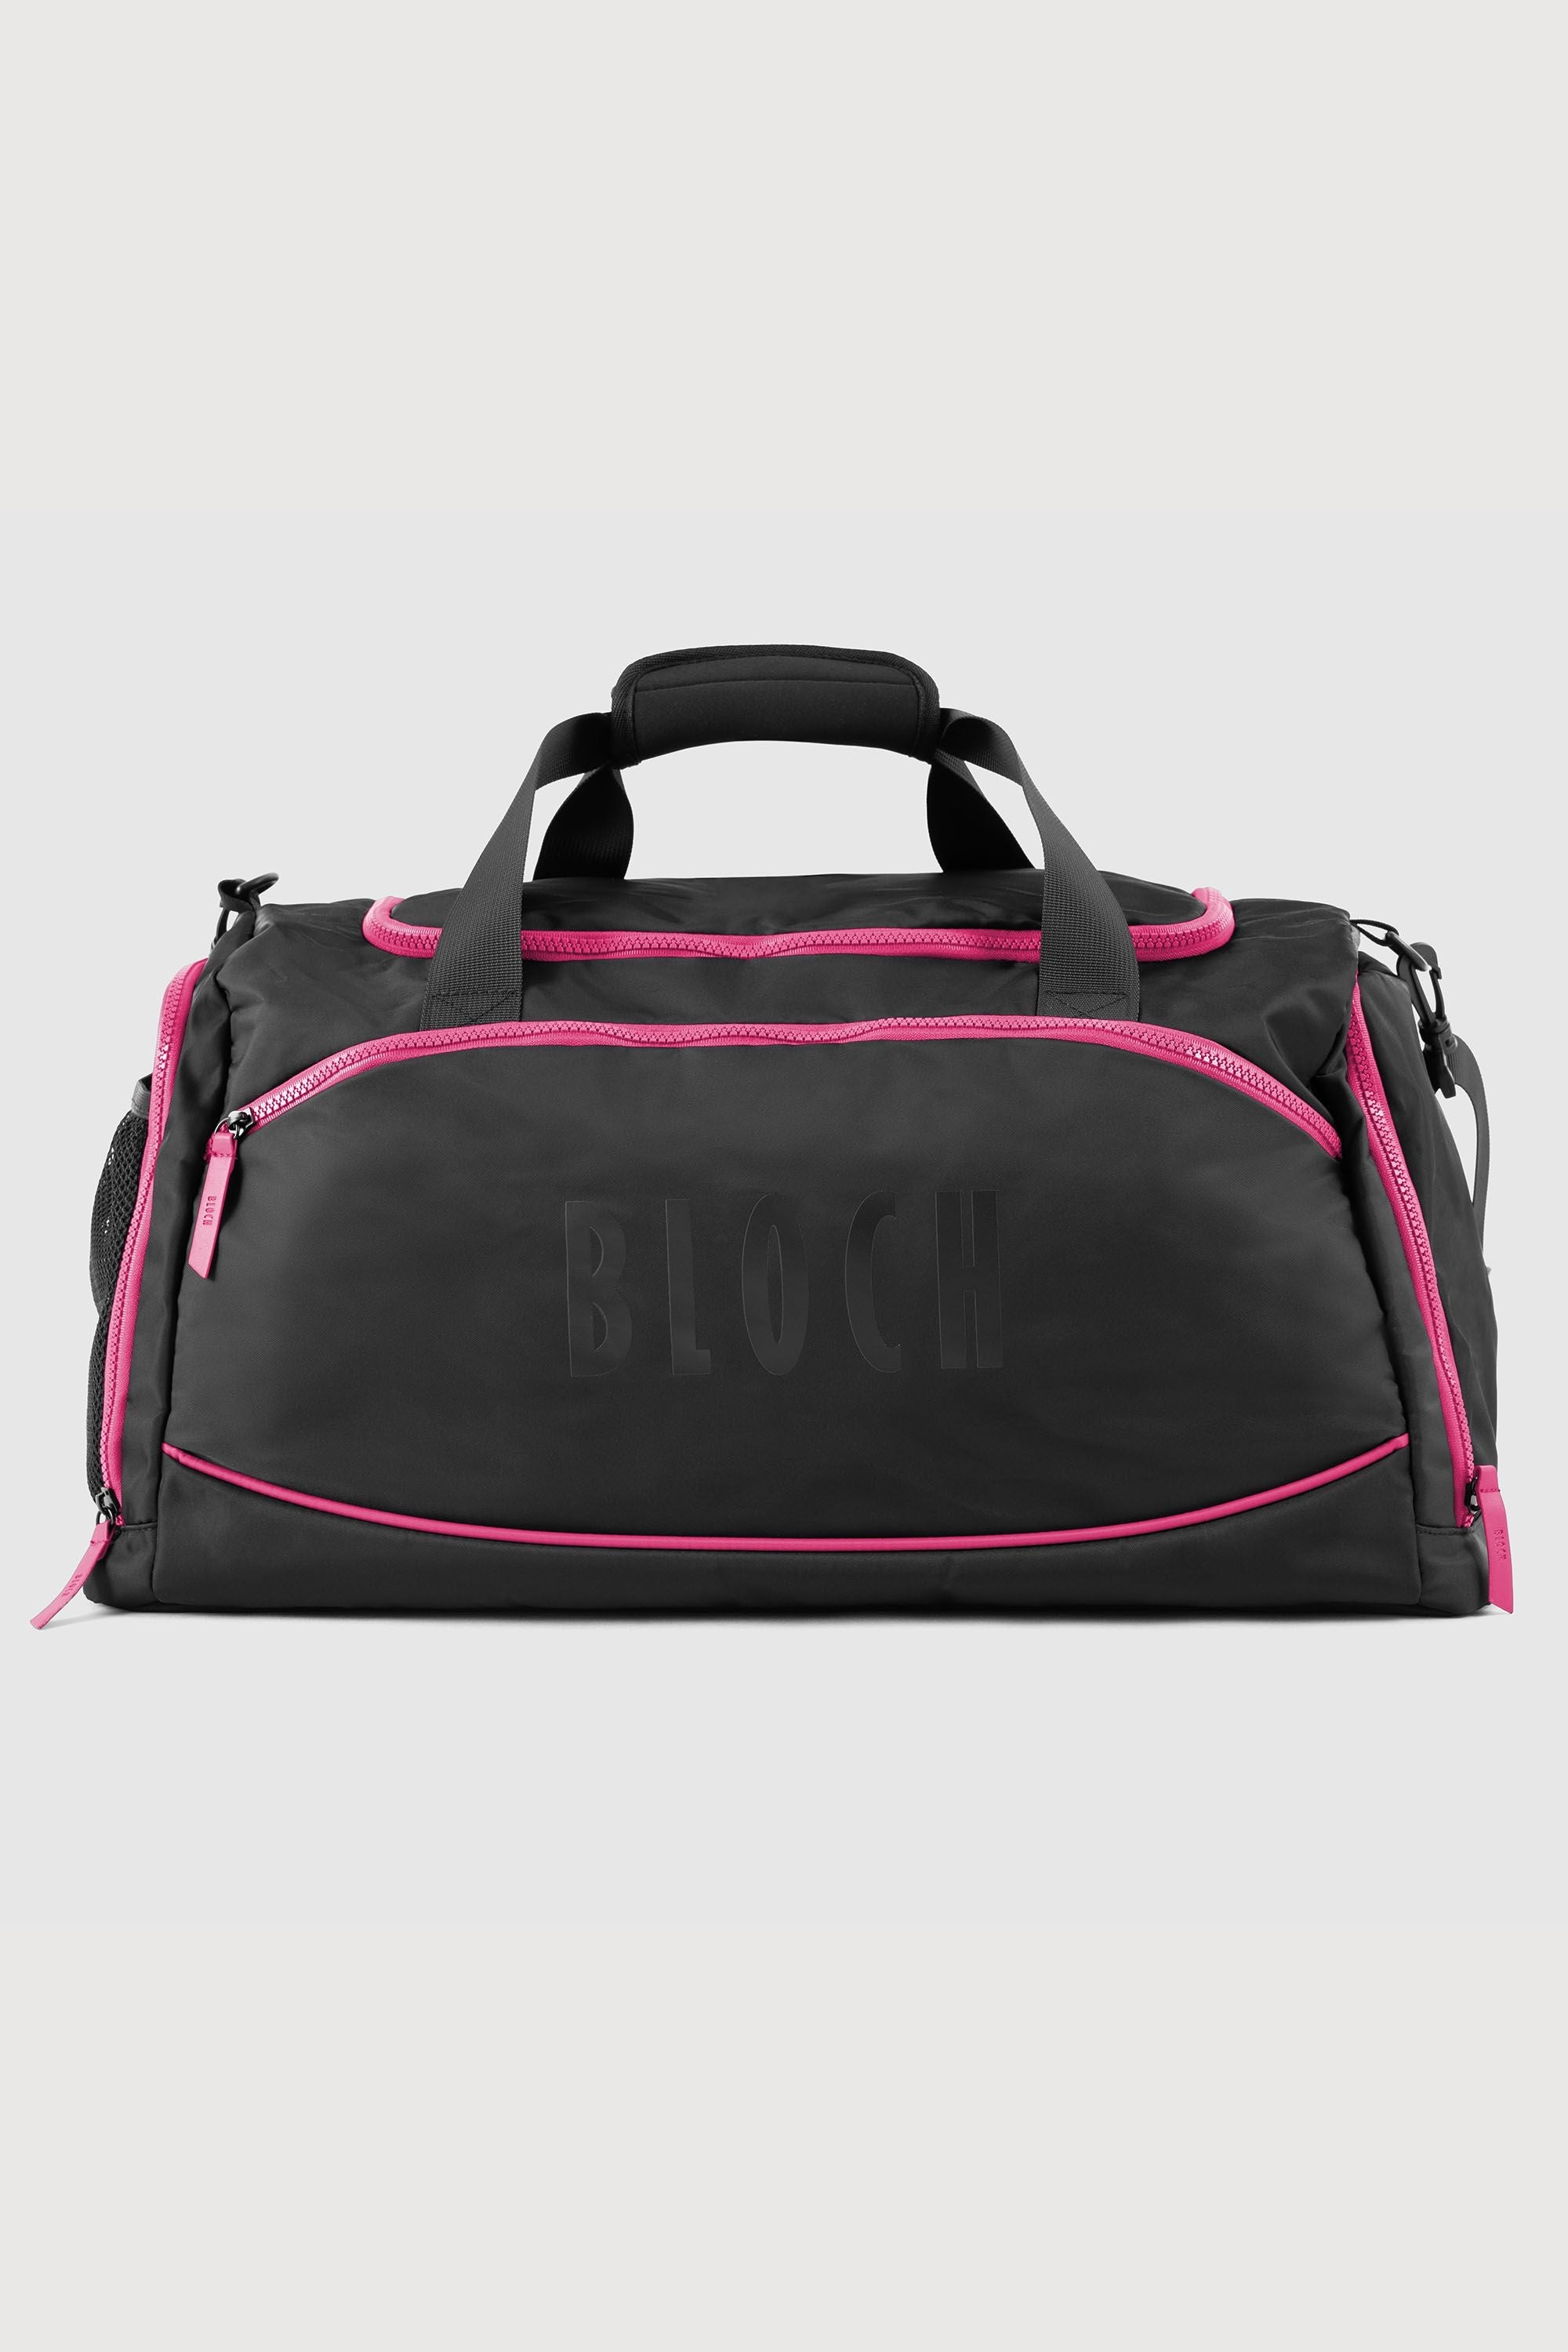 Bloch Troupe Dance Bag, Black Fuschia Nylon